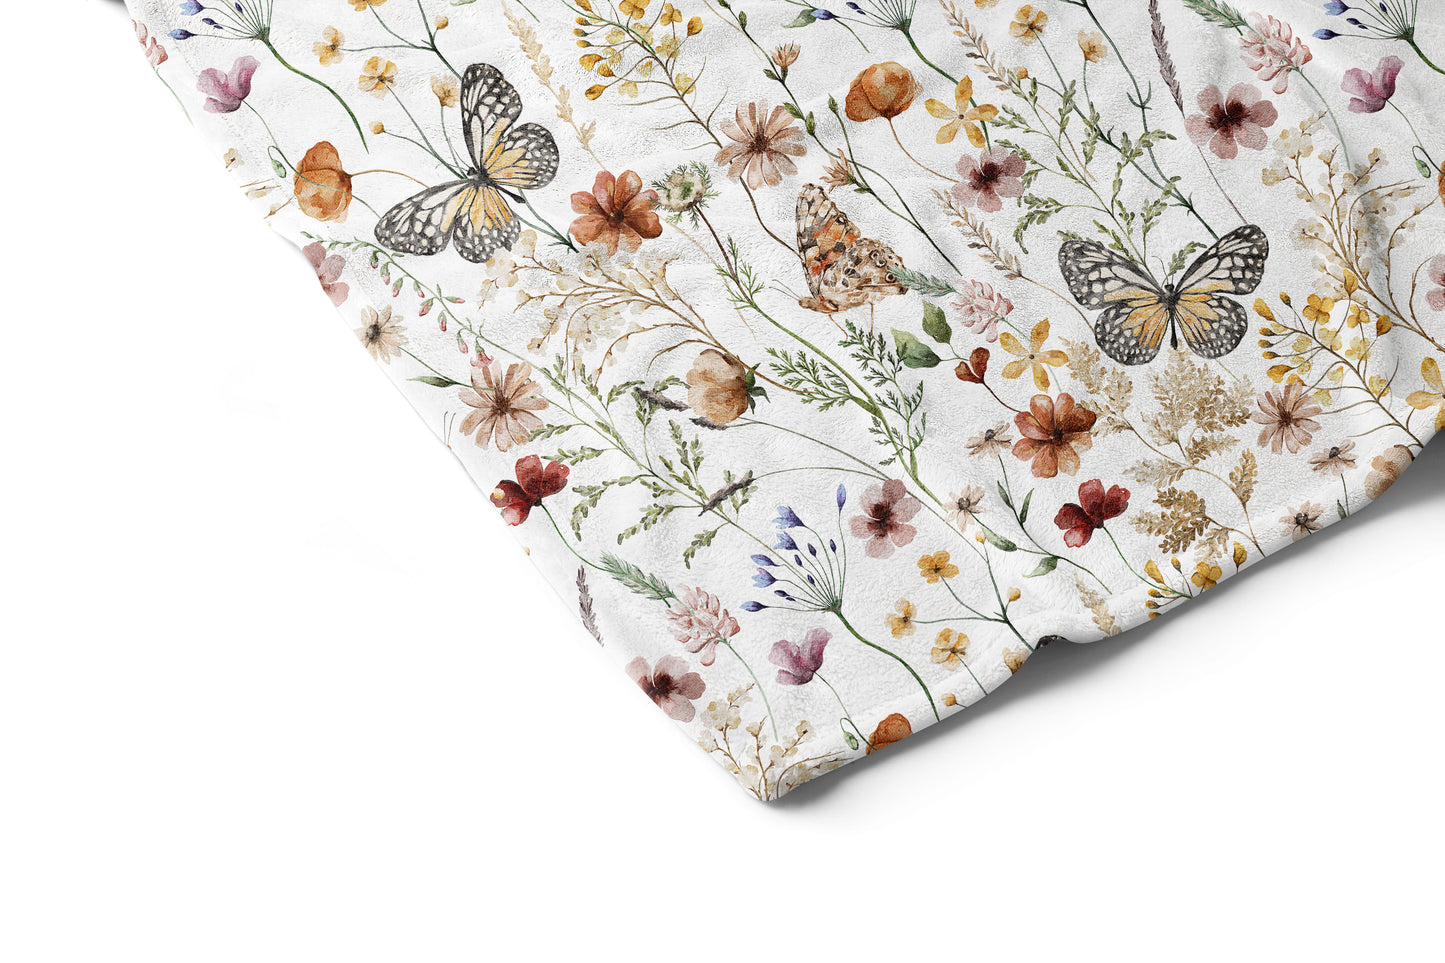 Wildflowers blanket, Boho floral nursery bedding - Butterfly garden